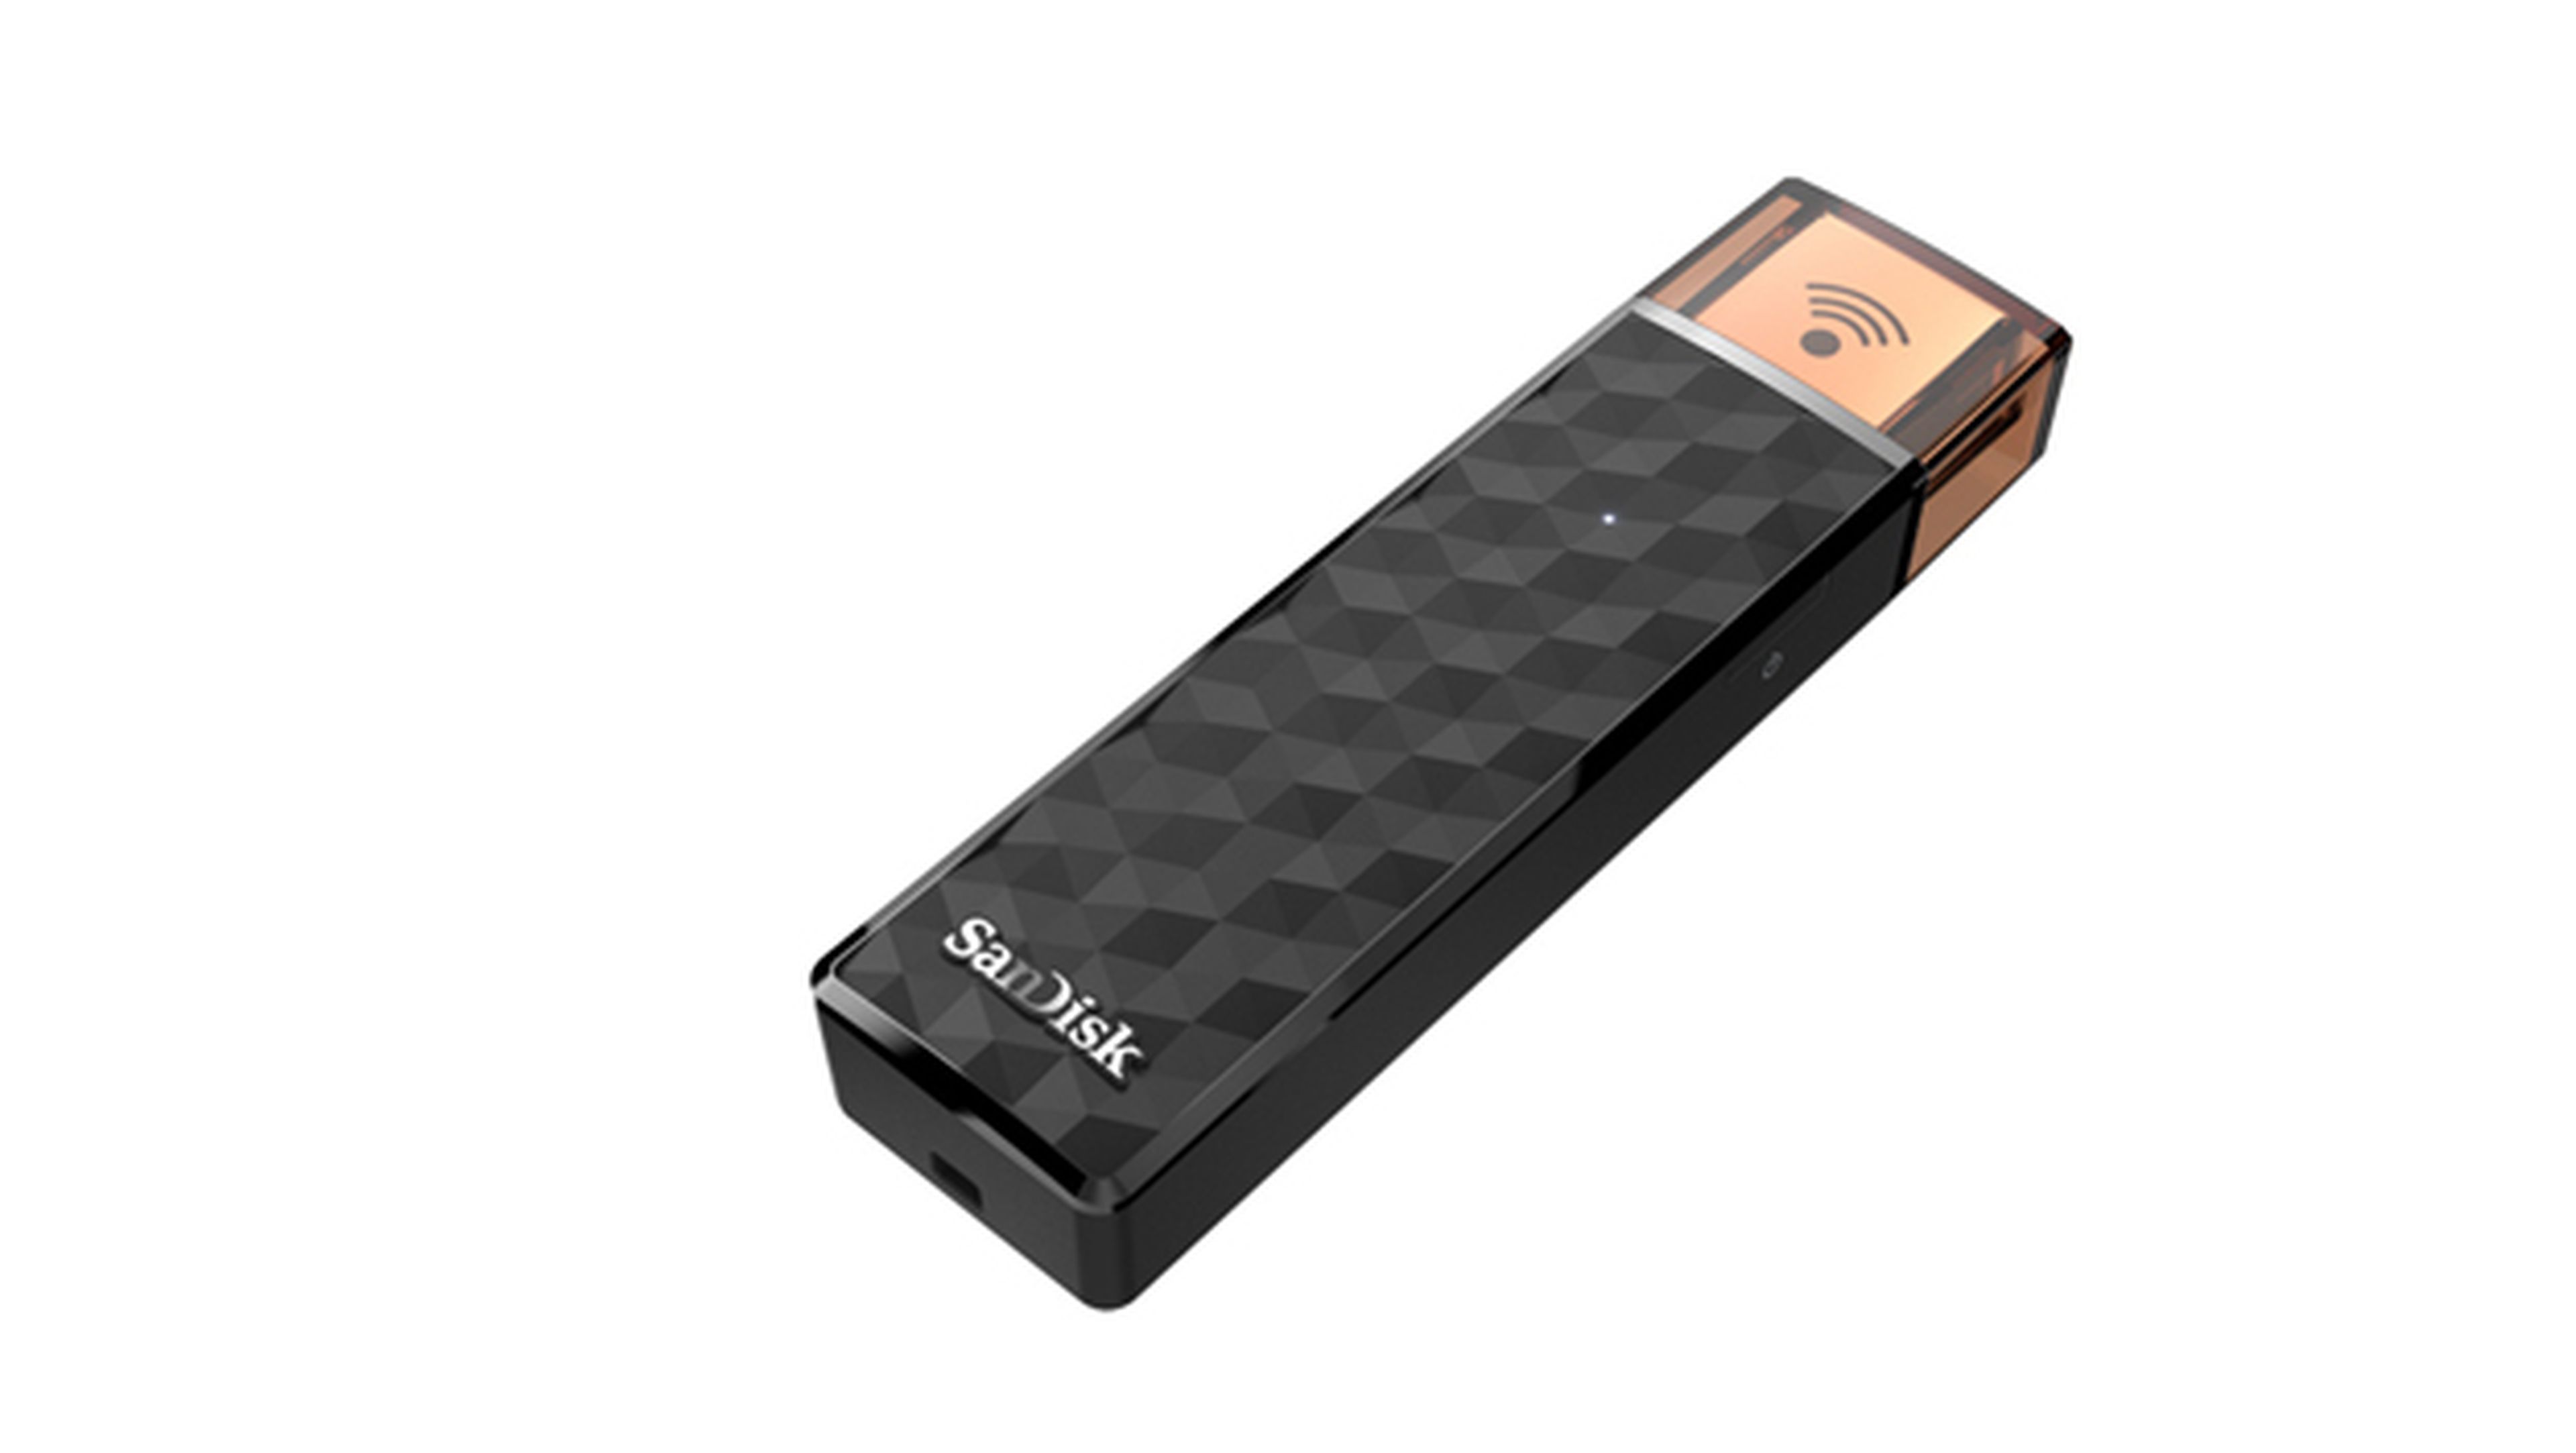 SanDisk lanza una memoria USB que integra conexión WiFi